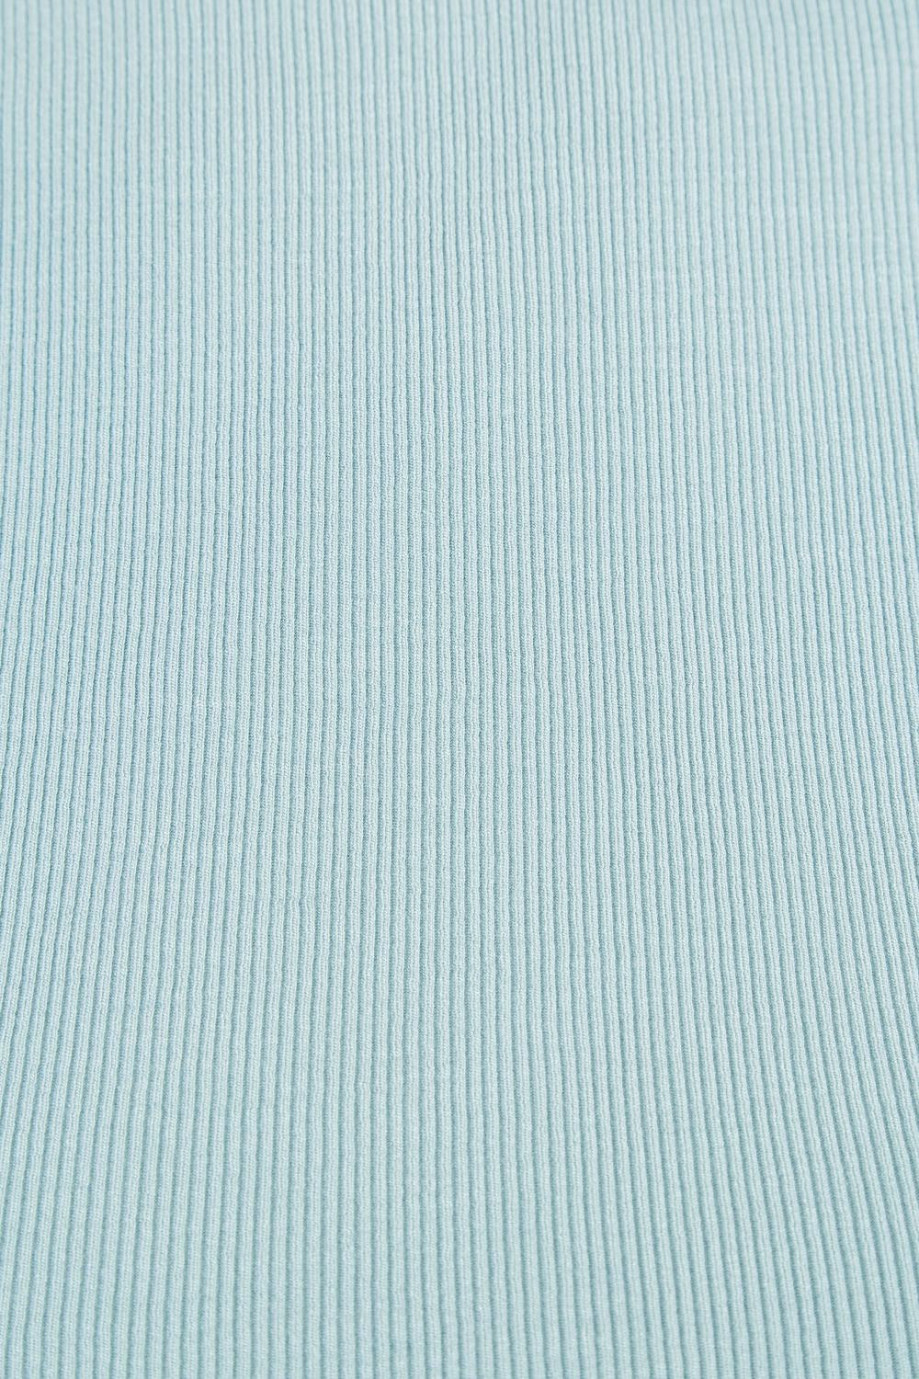 Camiseta manga sisa unicolor crop top con textura de canal